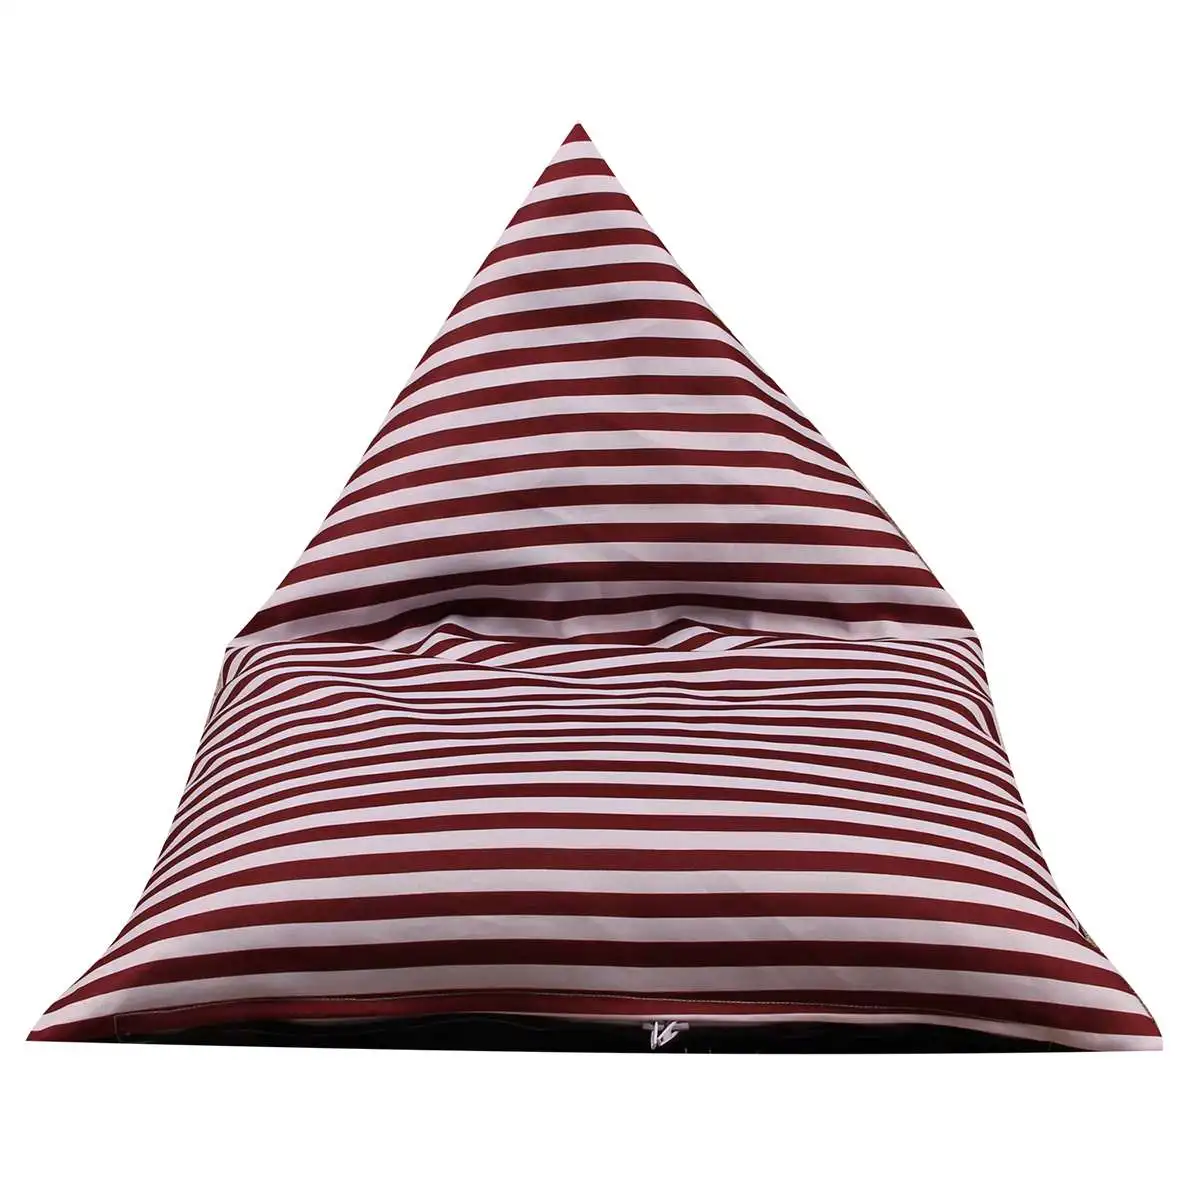 65*95*55 см Кукла Плюшевая сумка для хранения игрушек Texile органайзер для одеял полоса волна Bean сумка детская мягкая сумка стул без заполнения - Цвет: Wine red stripe